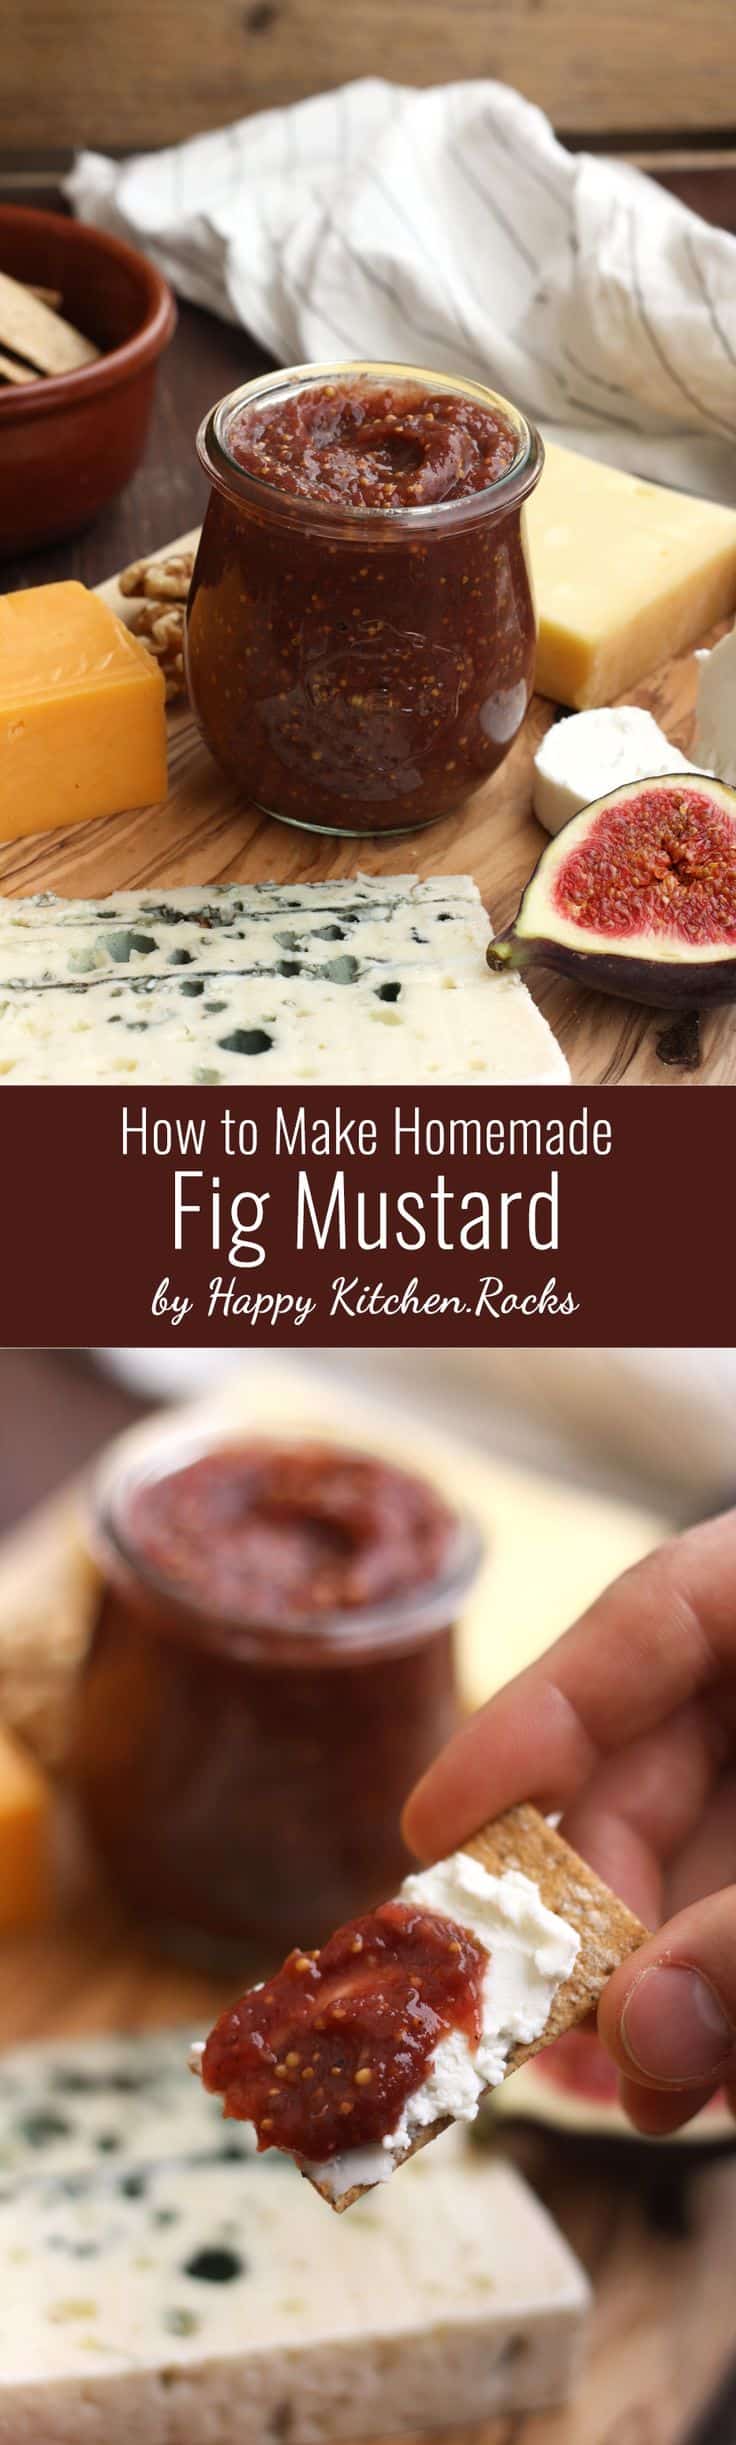 Homemade fig mustard